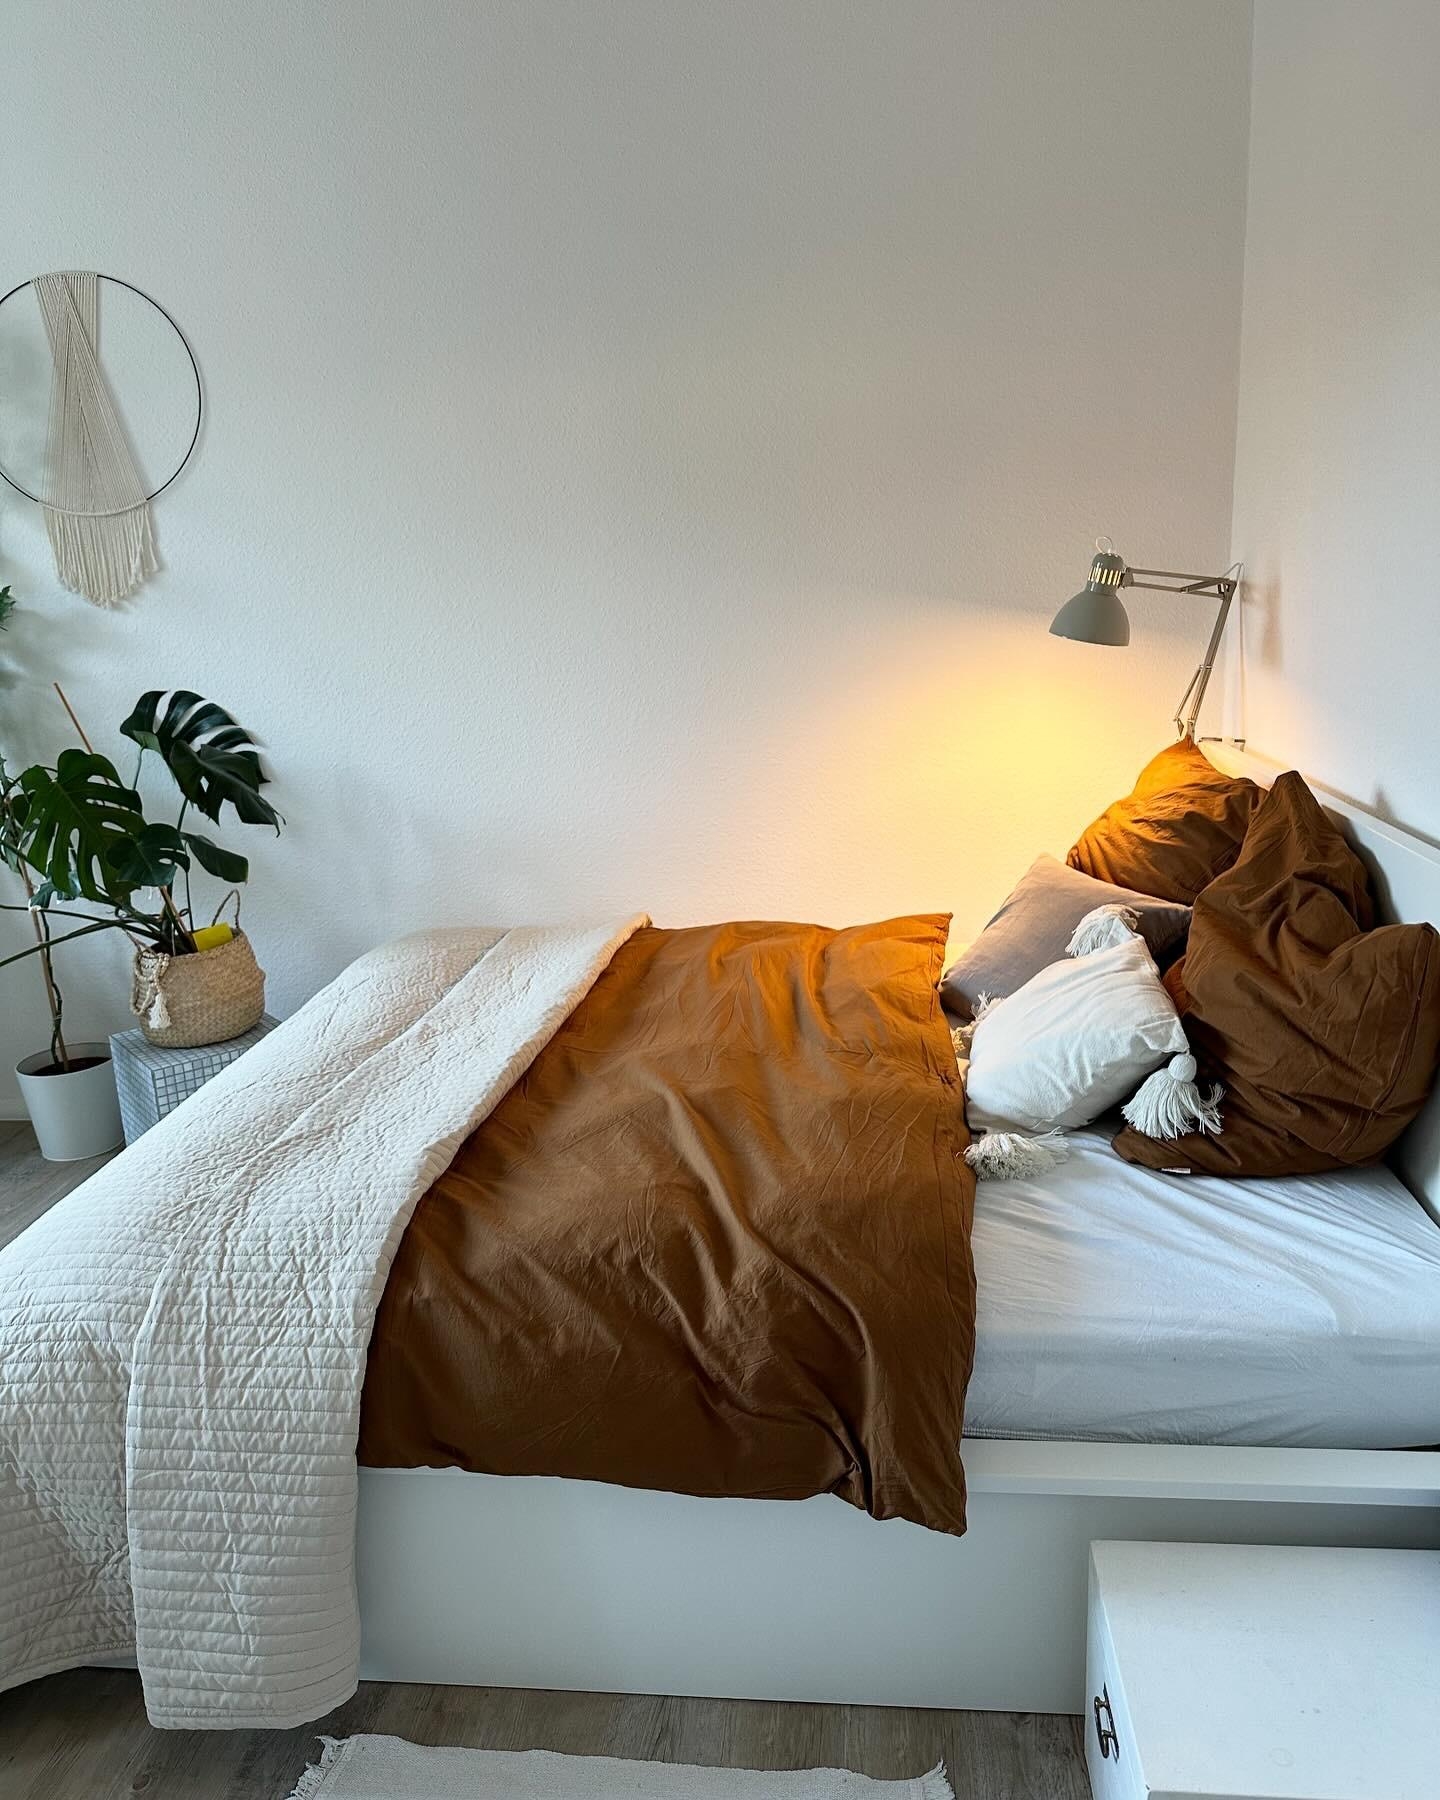 #rostbraun statt #weiß. Immer noch #minimalistisch, trotzdem mal etwas anderes im #schlafzimmer